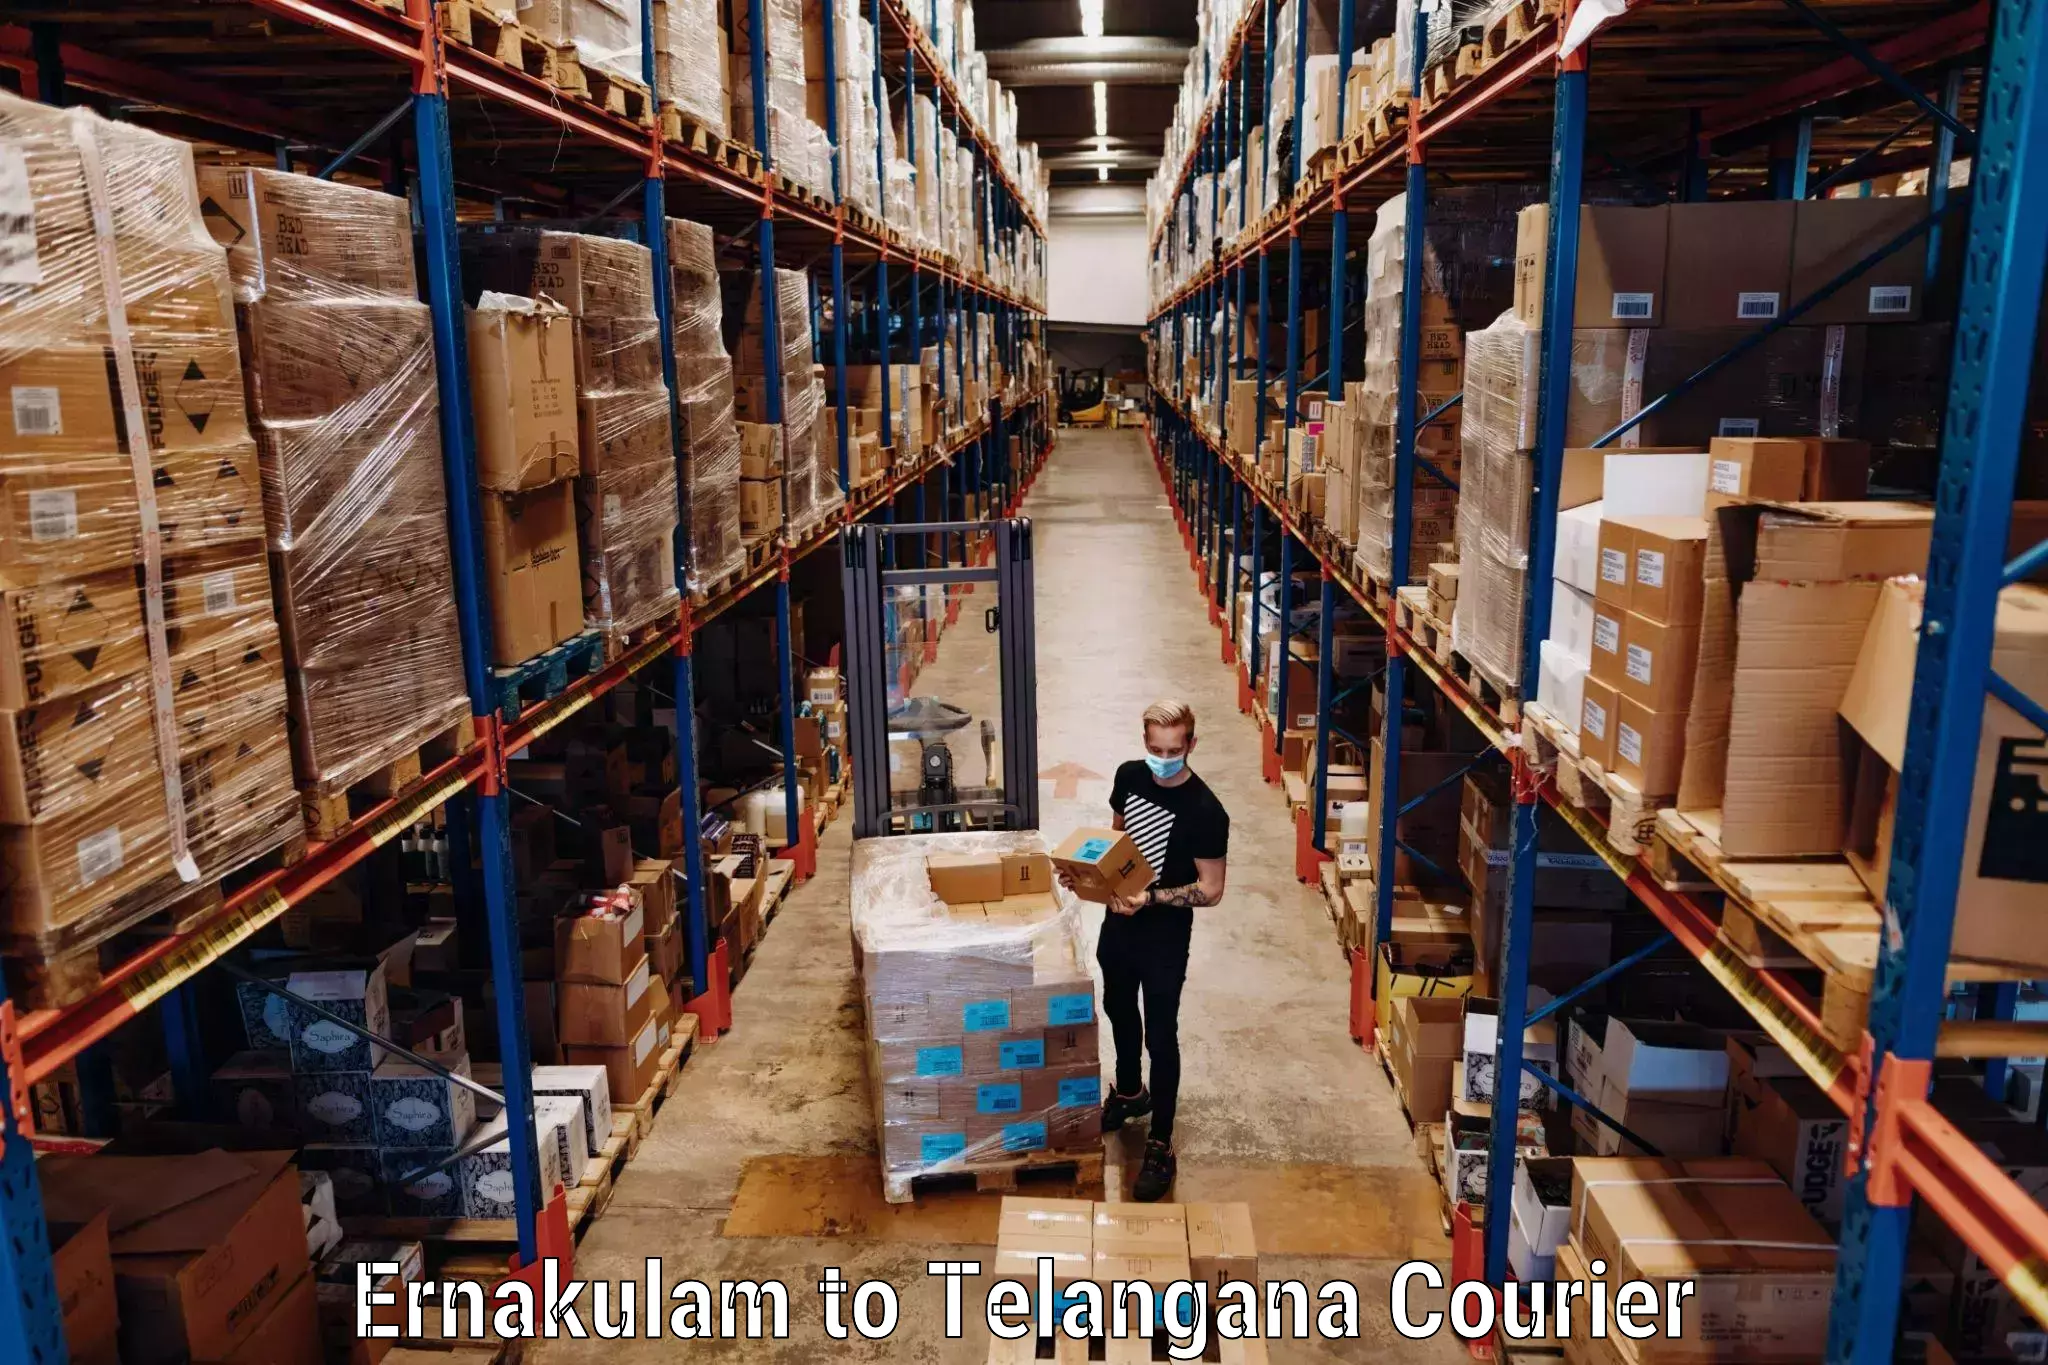 Luggage shipping specialists Ernakulam to Nalgonda